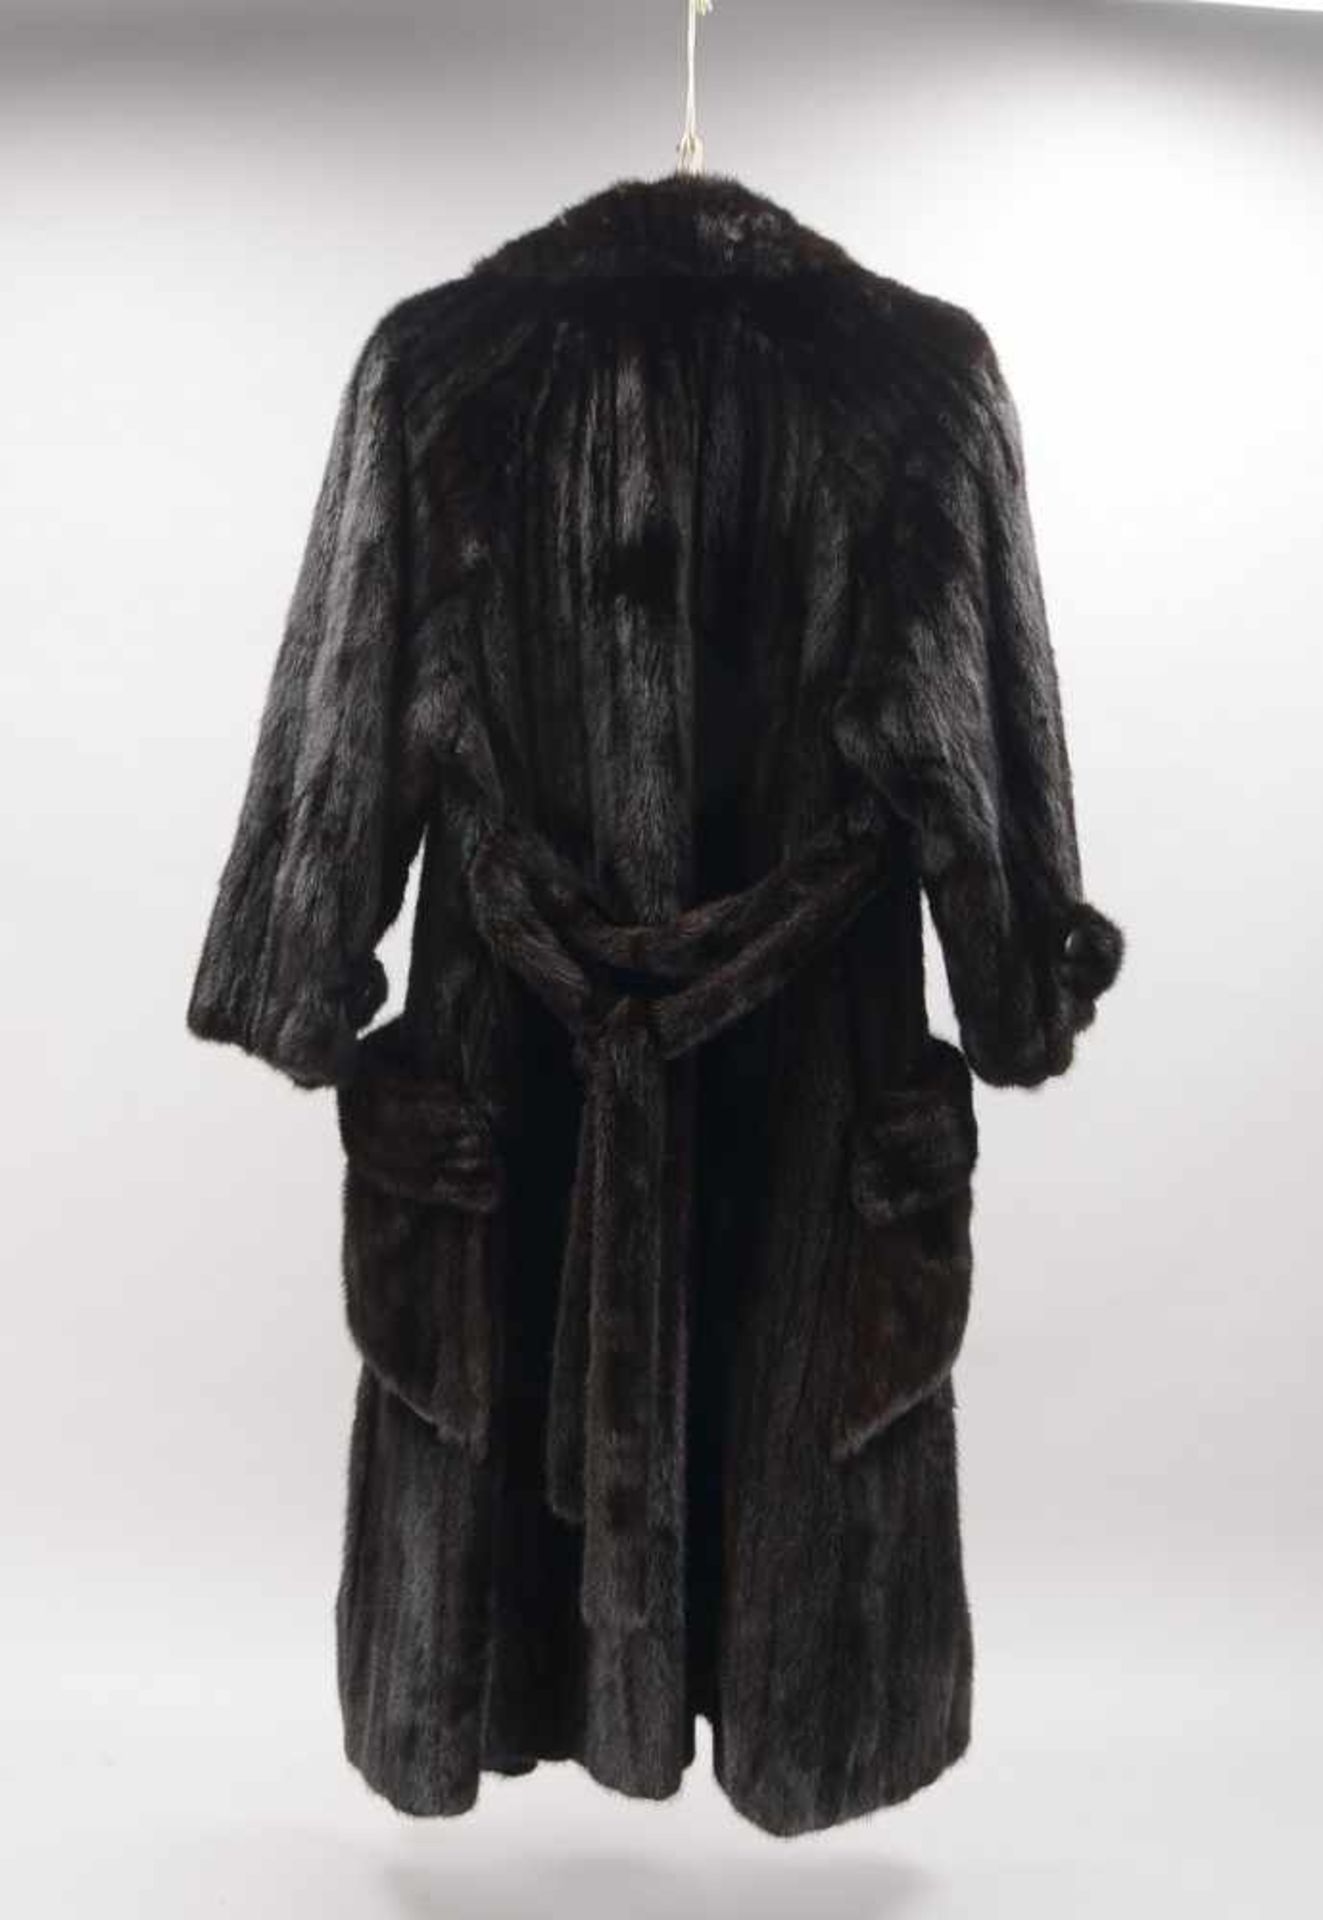 Damen-Pelzmantel, Darknerz, mit aufgesetzten Taschen, mit Gürtel; Größe ca. 40 (Naht partiell leicht